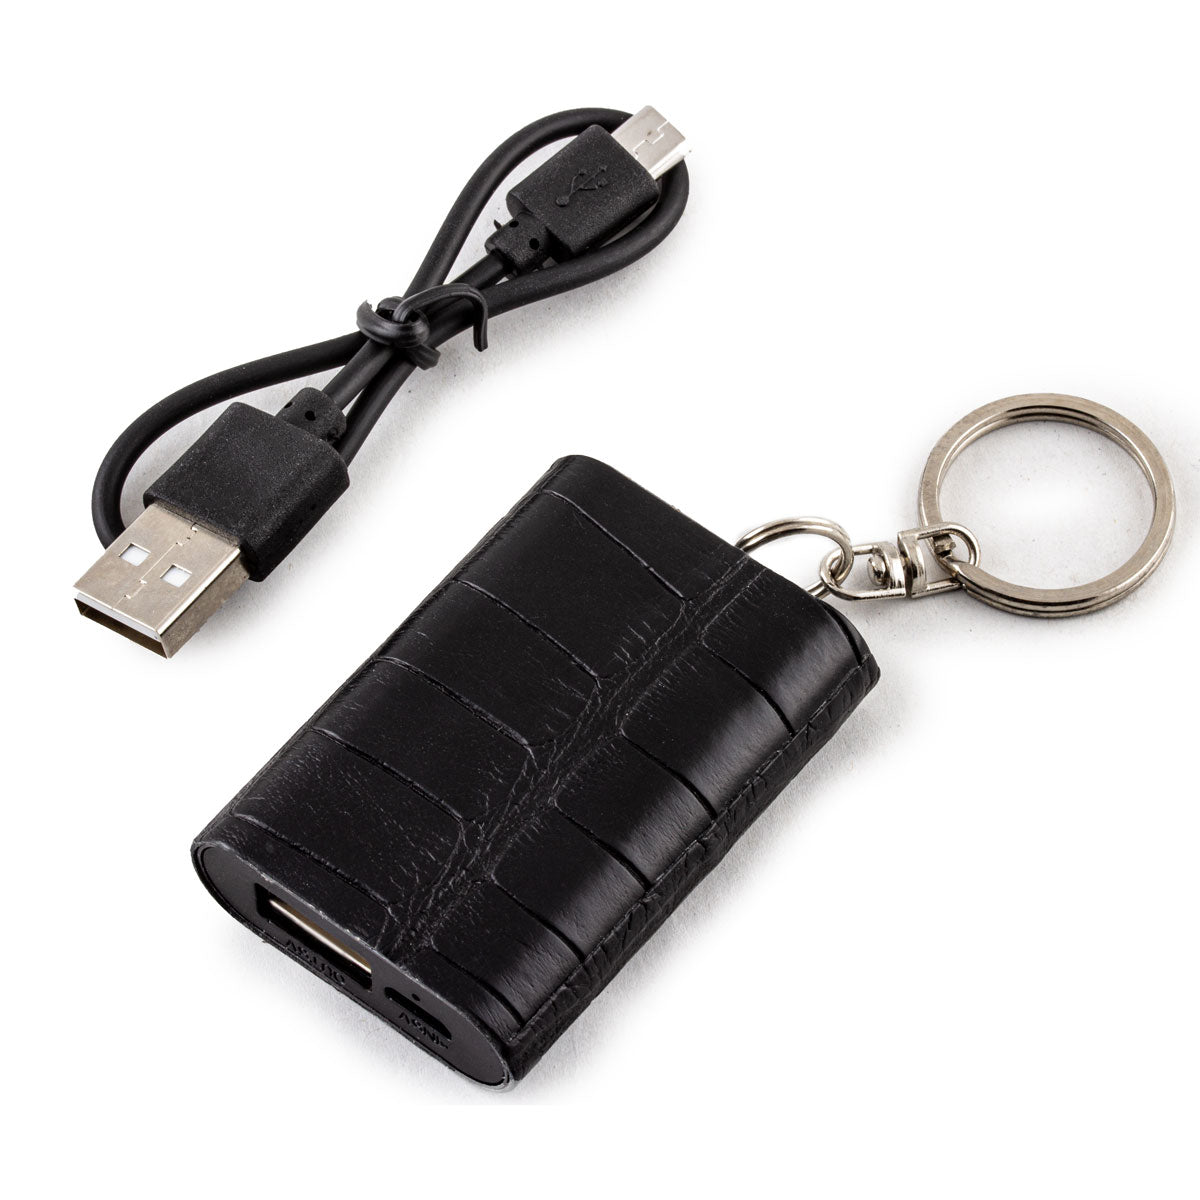 Mini Powerbank / batterie externe - Porte-clé - Alligator - Chargeur universel iPhone , Samsung , smartphone, tablette... ( noir, marron, gris)